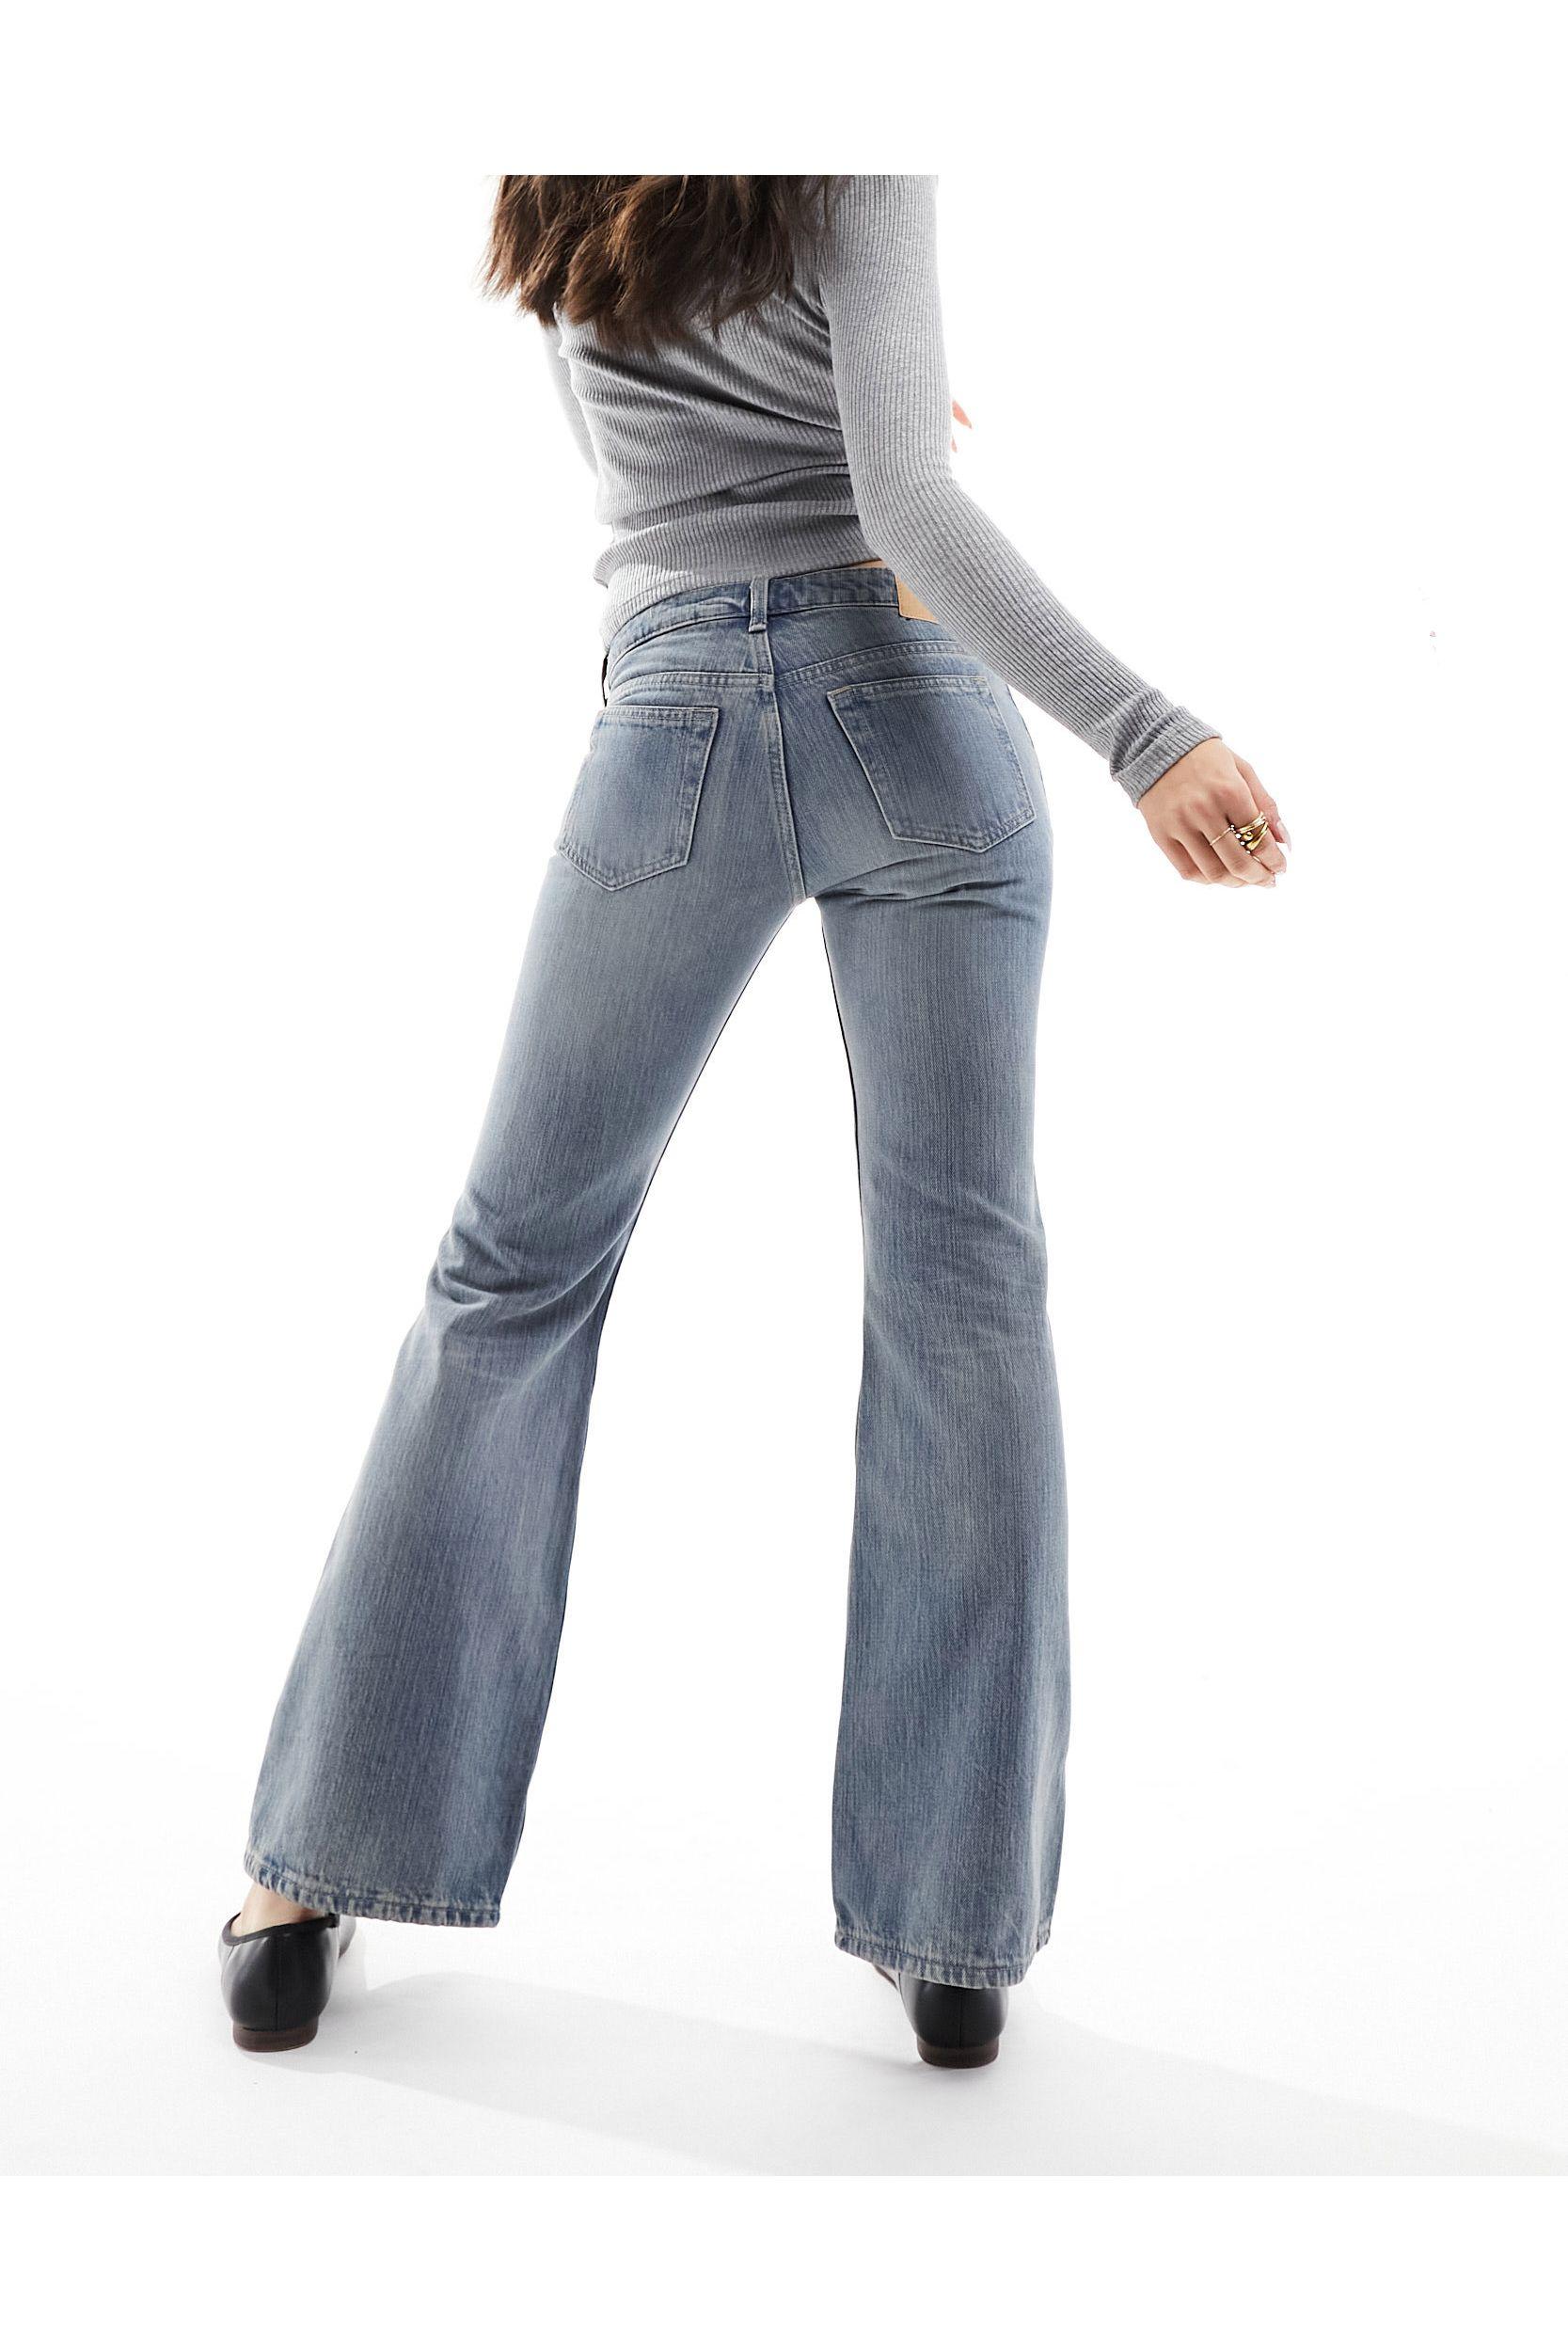 Weekday Nova low waist slim bootcut jeans in swamp blue